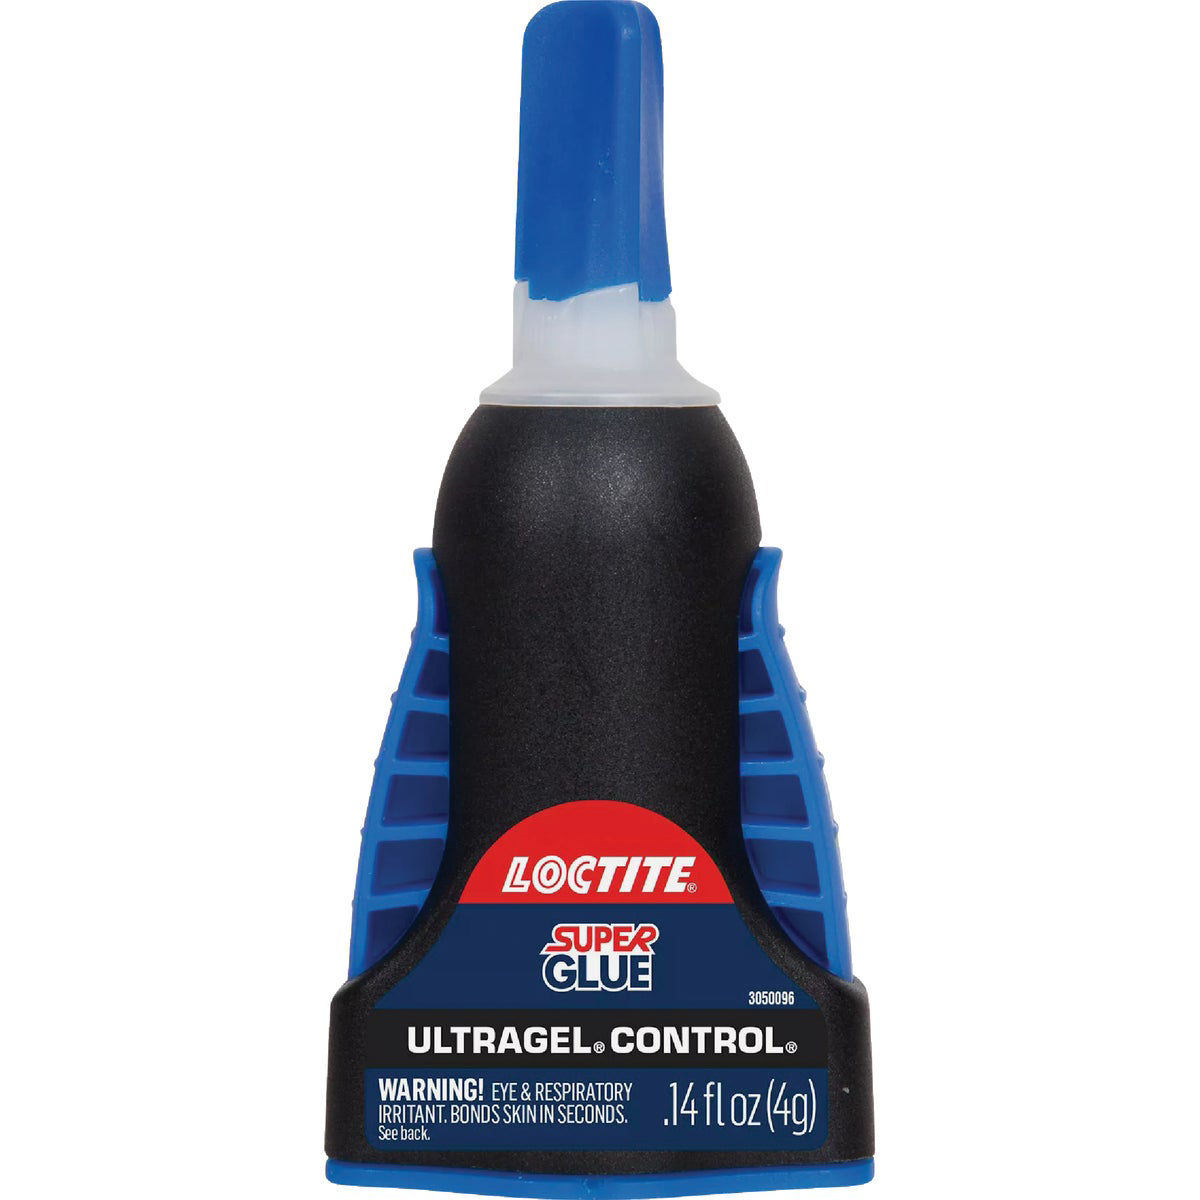 Ultragel Control Super Glue